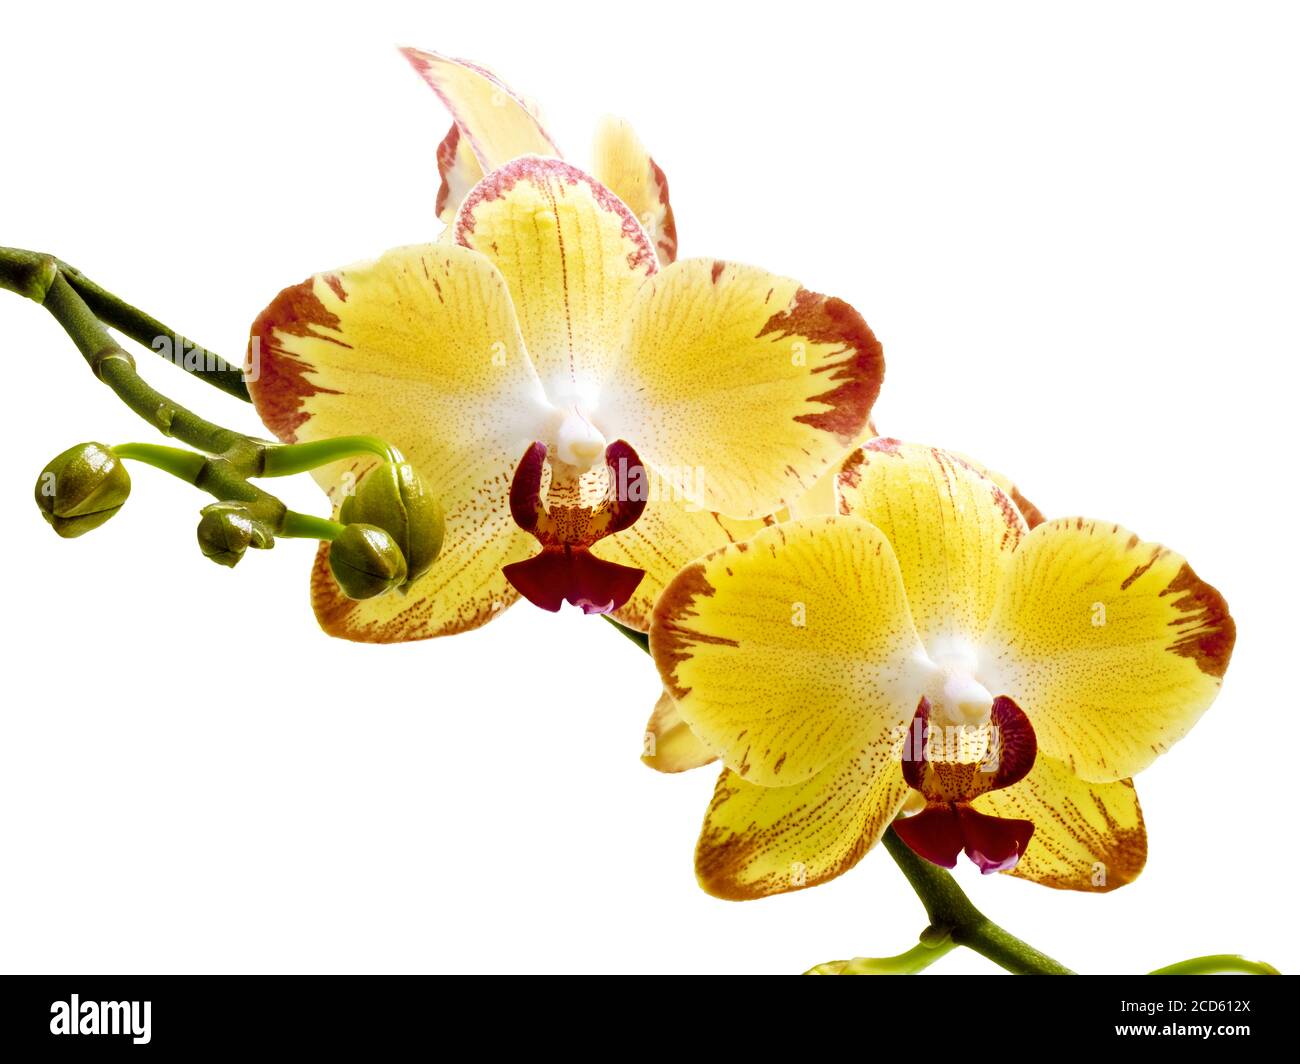 Gros plan de l'orchidée jaune et rouge sur fond blanc Banque D'Images